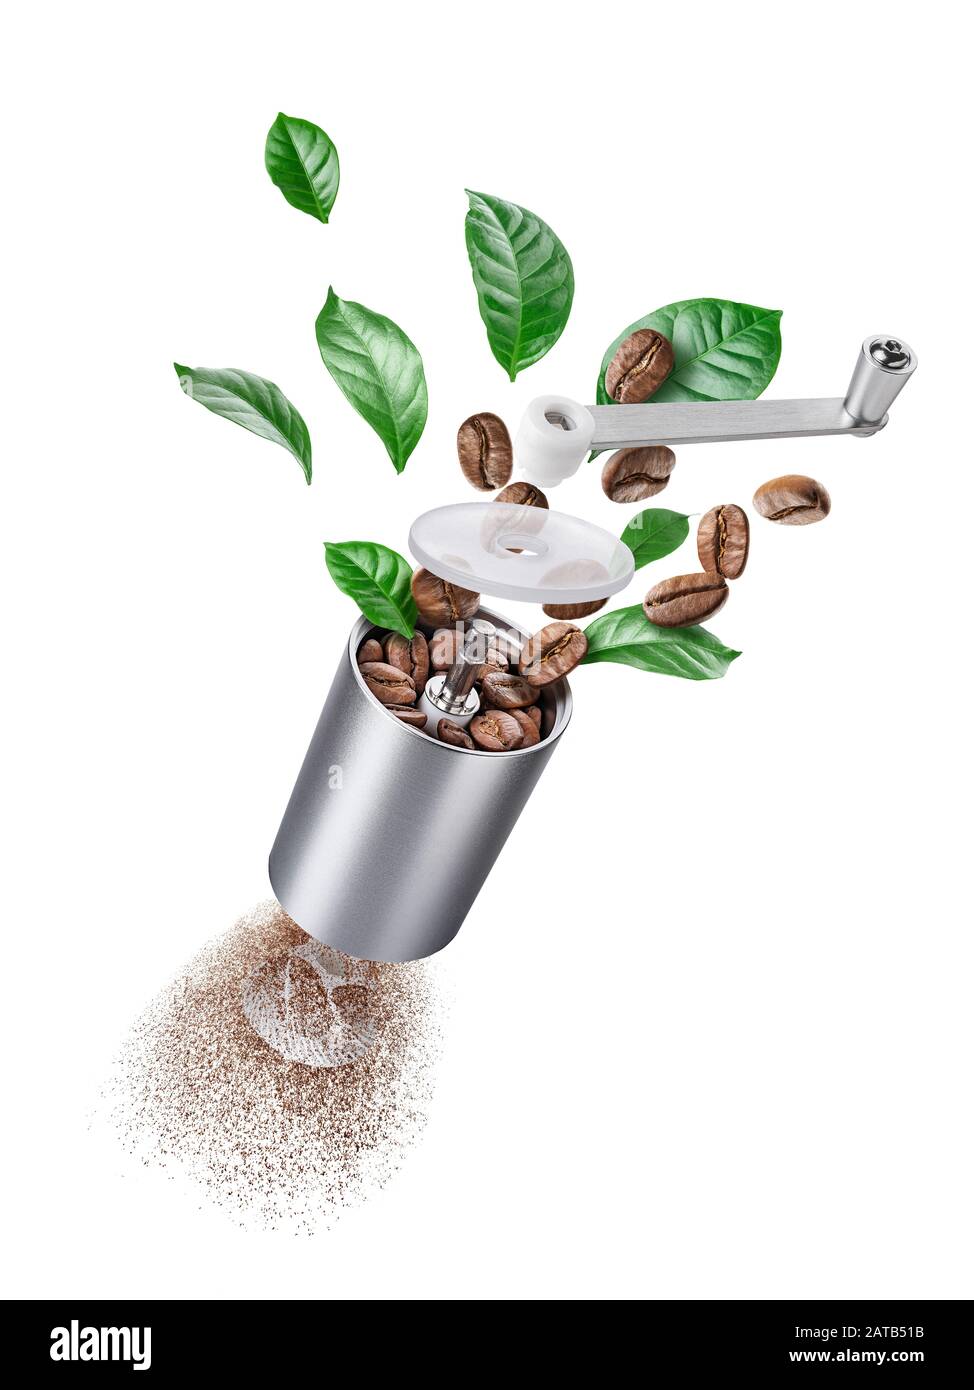 Despiece del molinillo de café con granos y hojas tostados Foto de stock